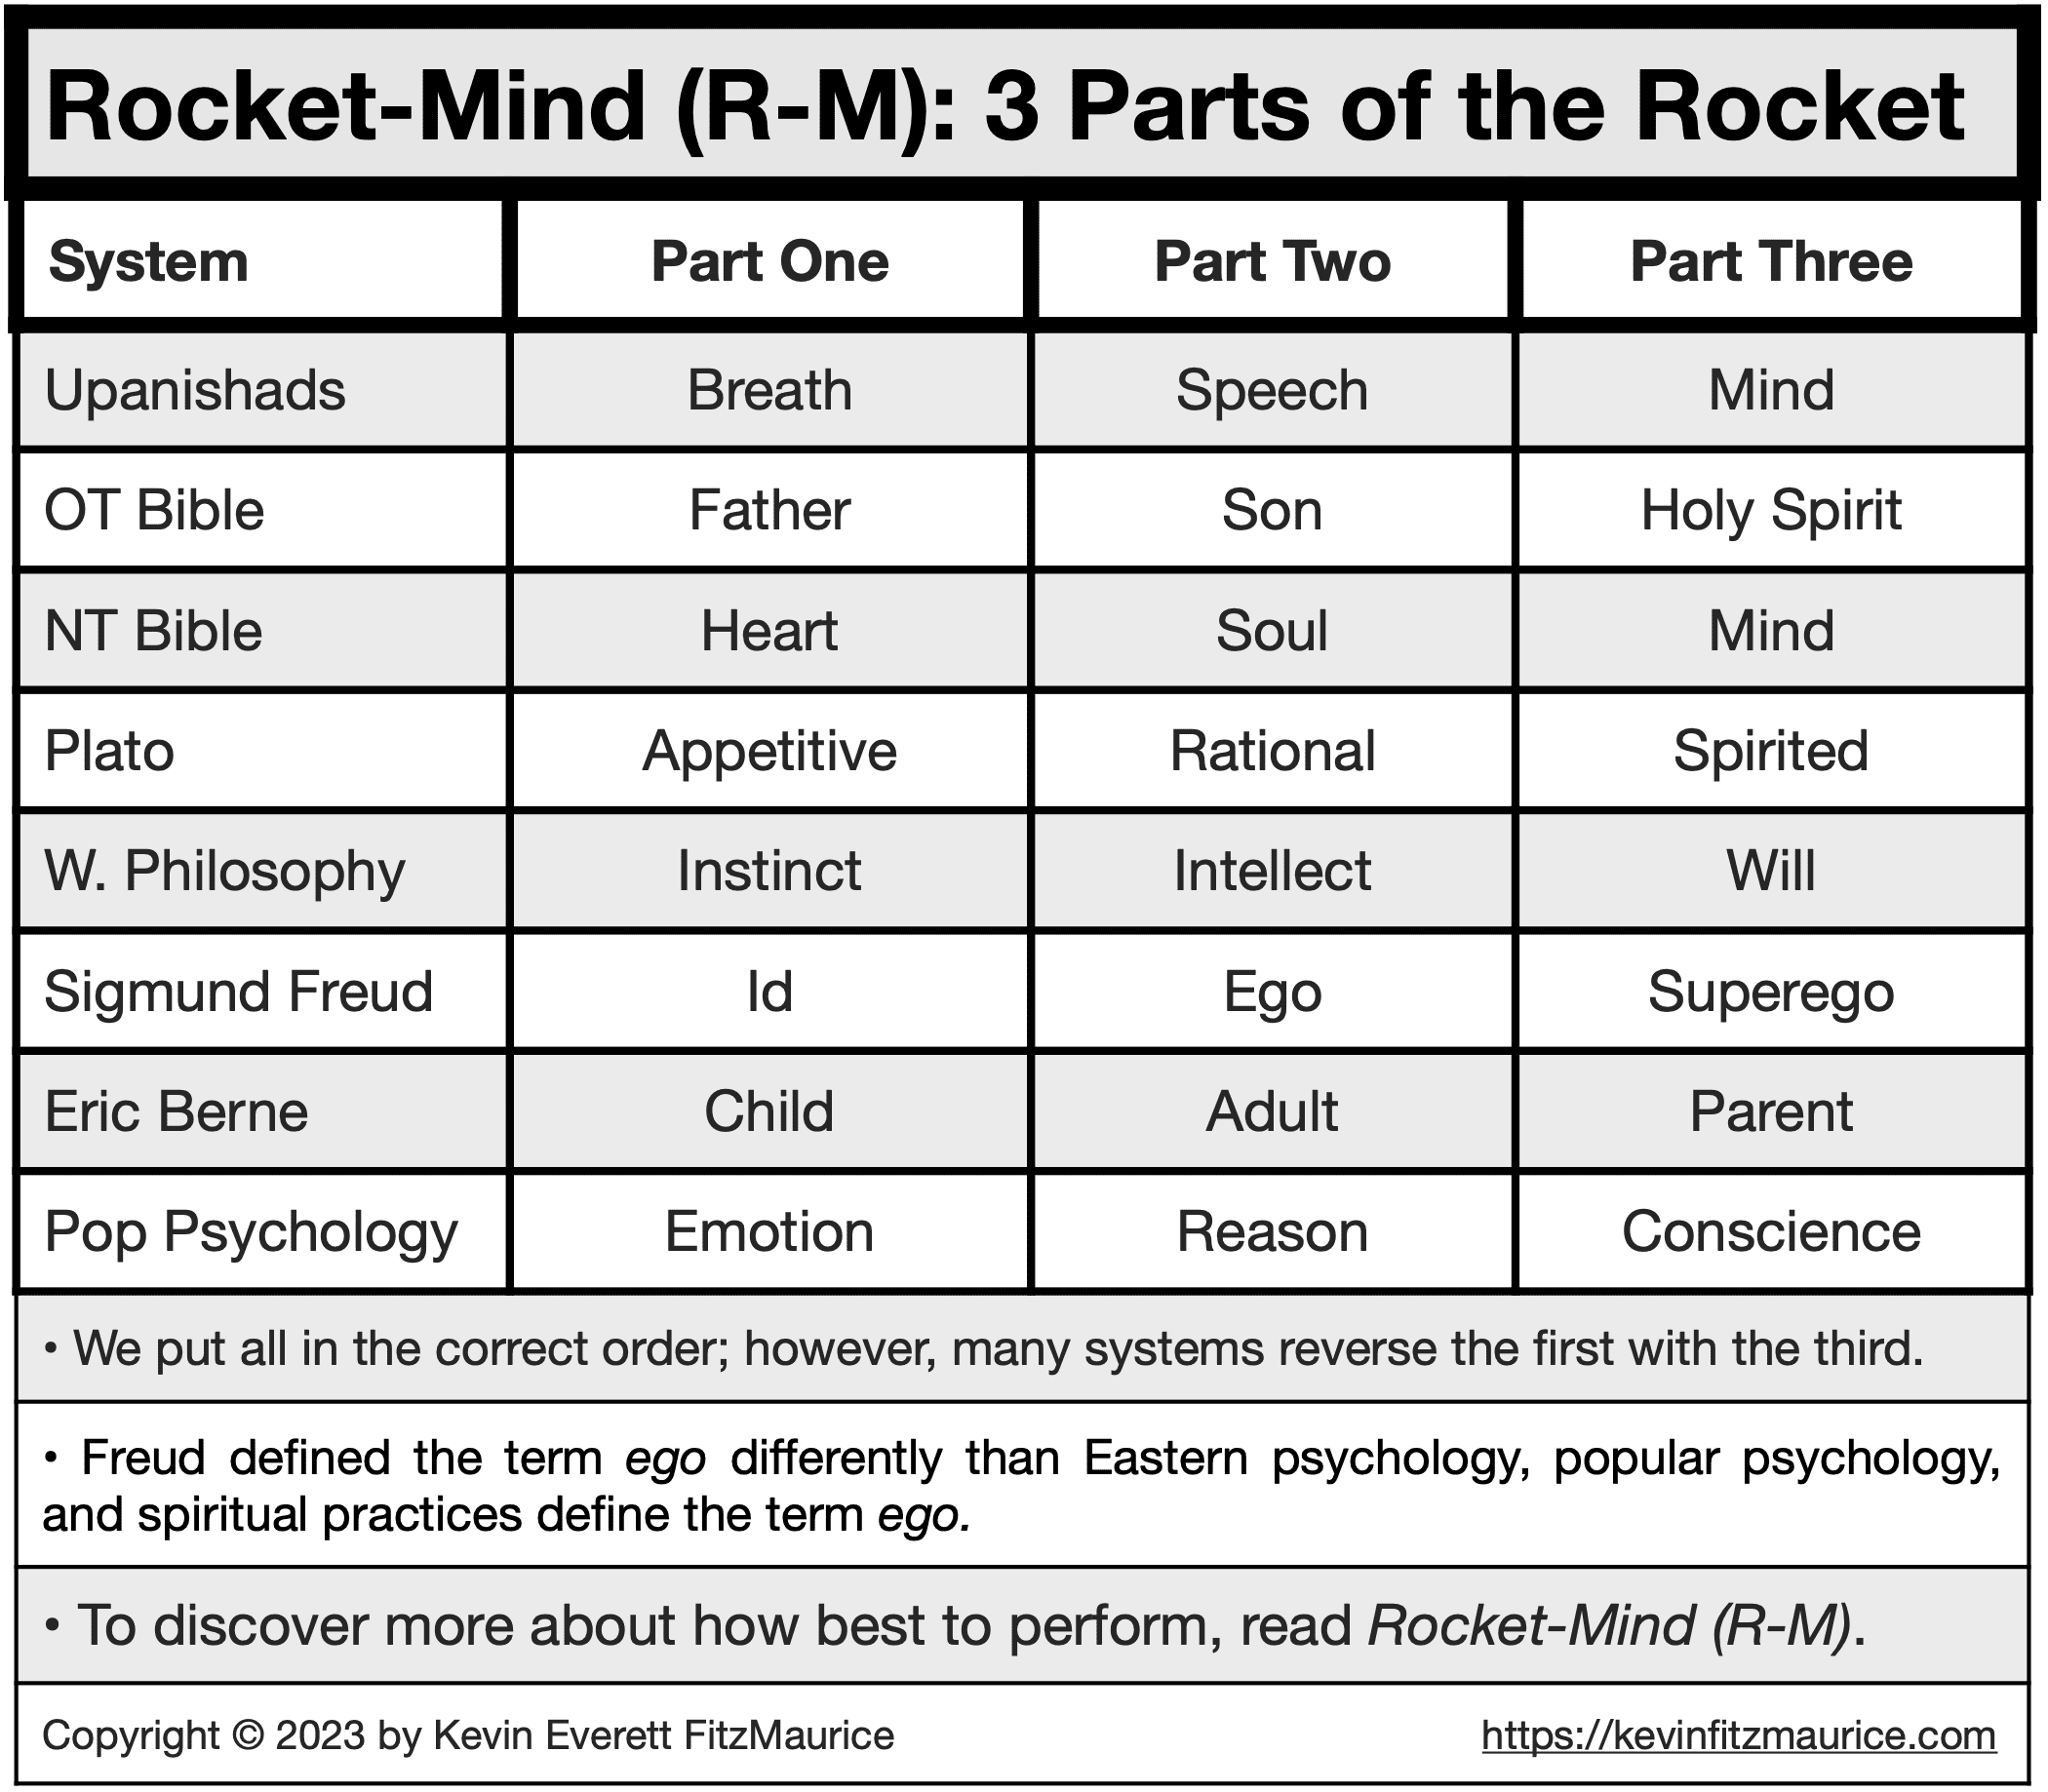 Rocket-Mind 3 Parts of the Rocket